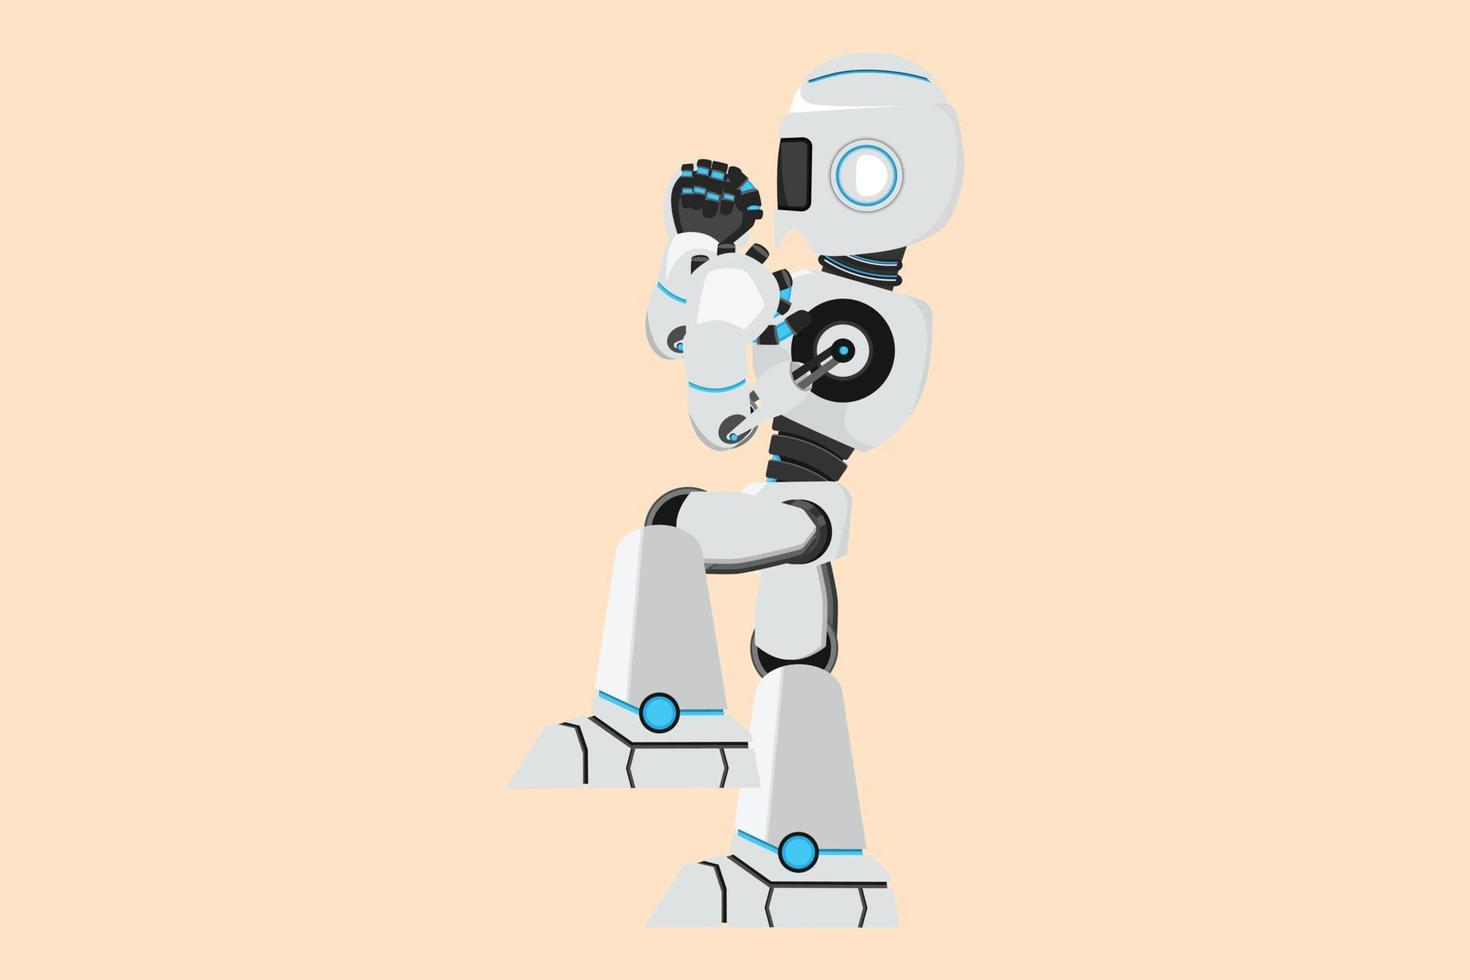 Business-Design-Zeichnung glücklicher Roboter, der mit einem erhobenen Bein steht und eine Ja-Geste macht. zukünftige Technologieentwicklung. maschinelles lernen mit künstlicher intelligenz. flache Cartoon-Stil-Vektor-Illustration vektor